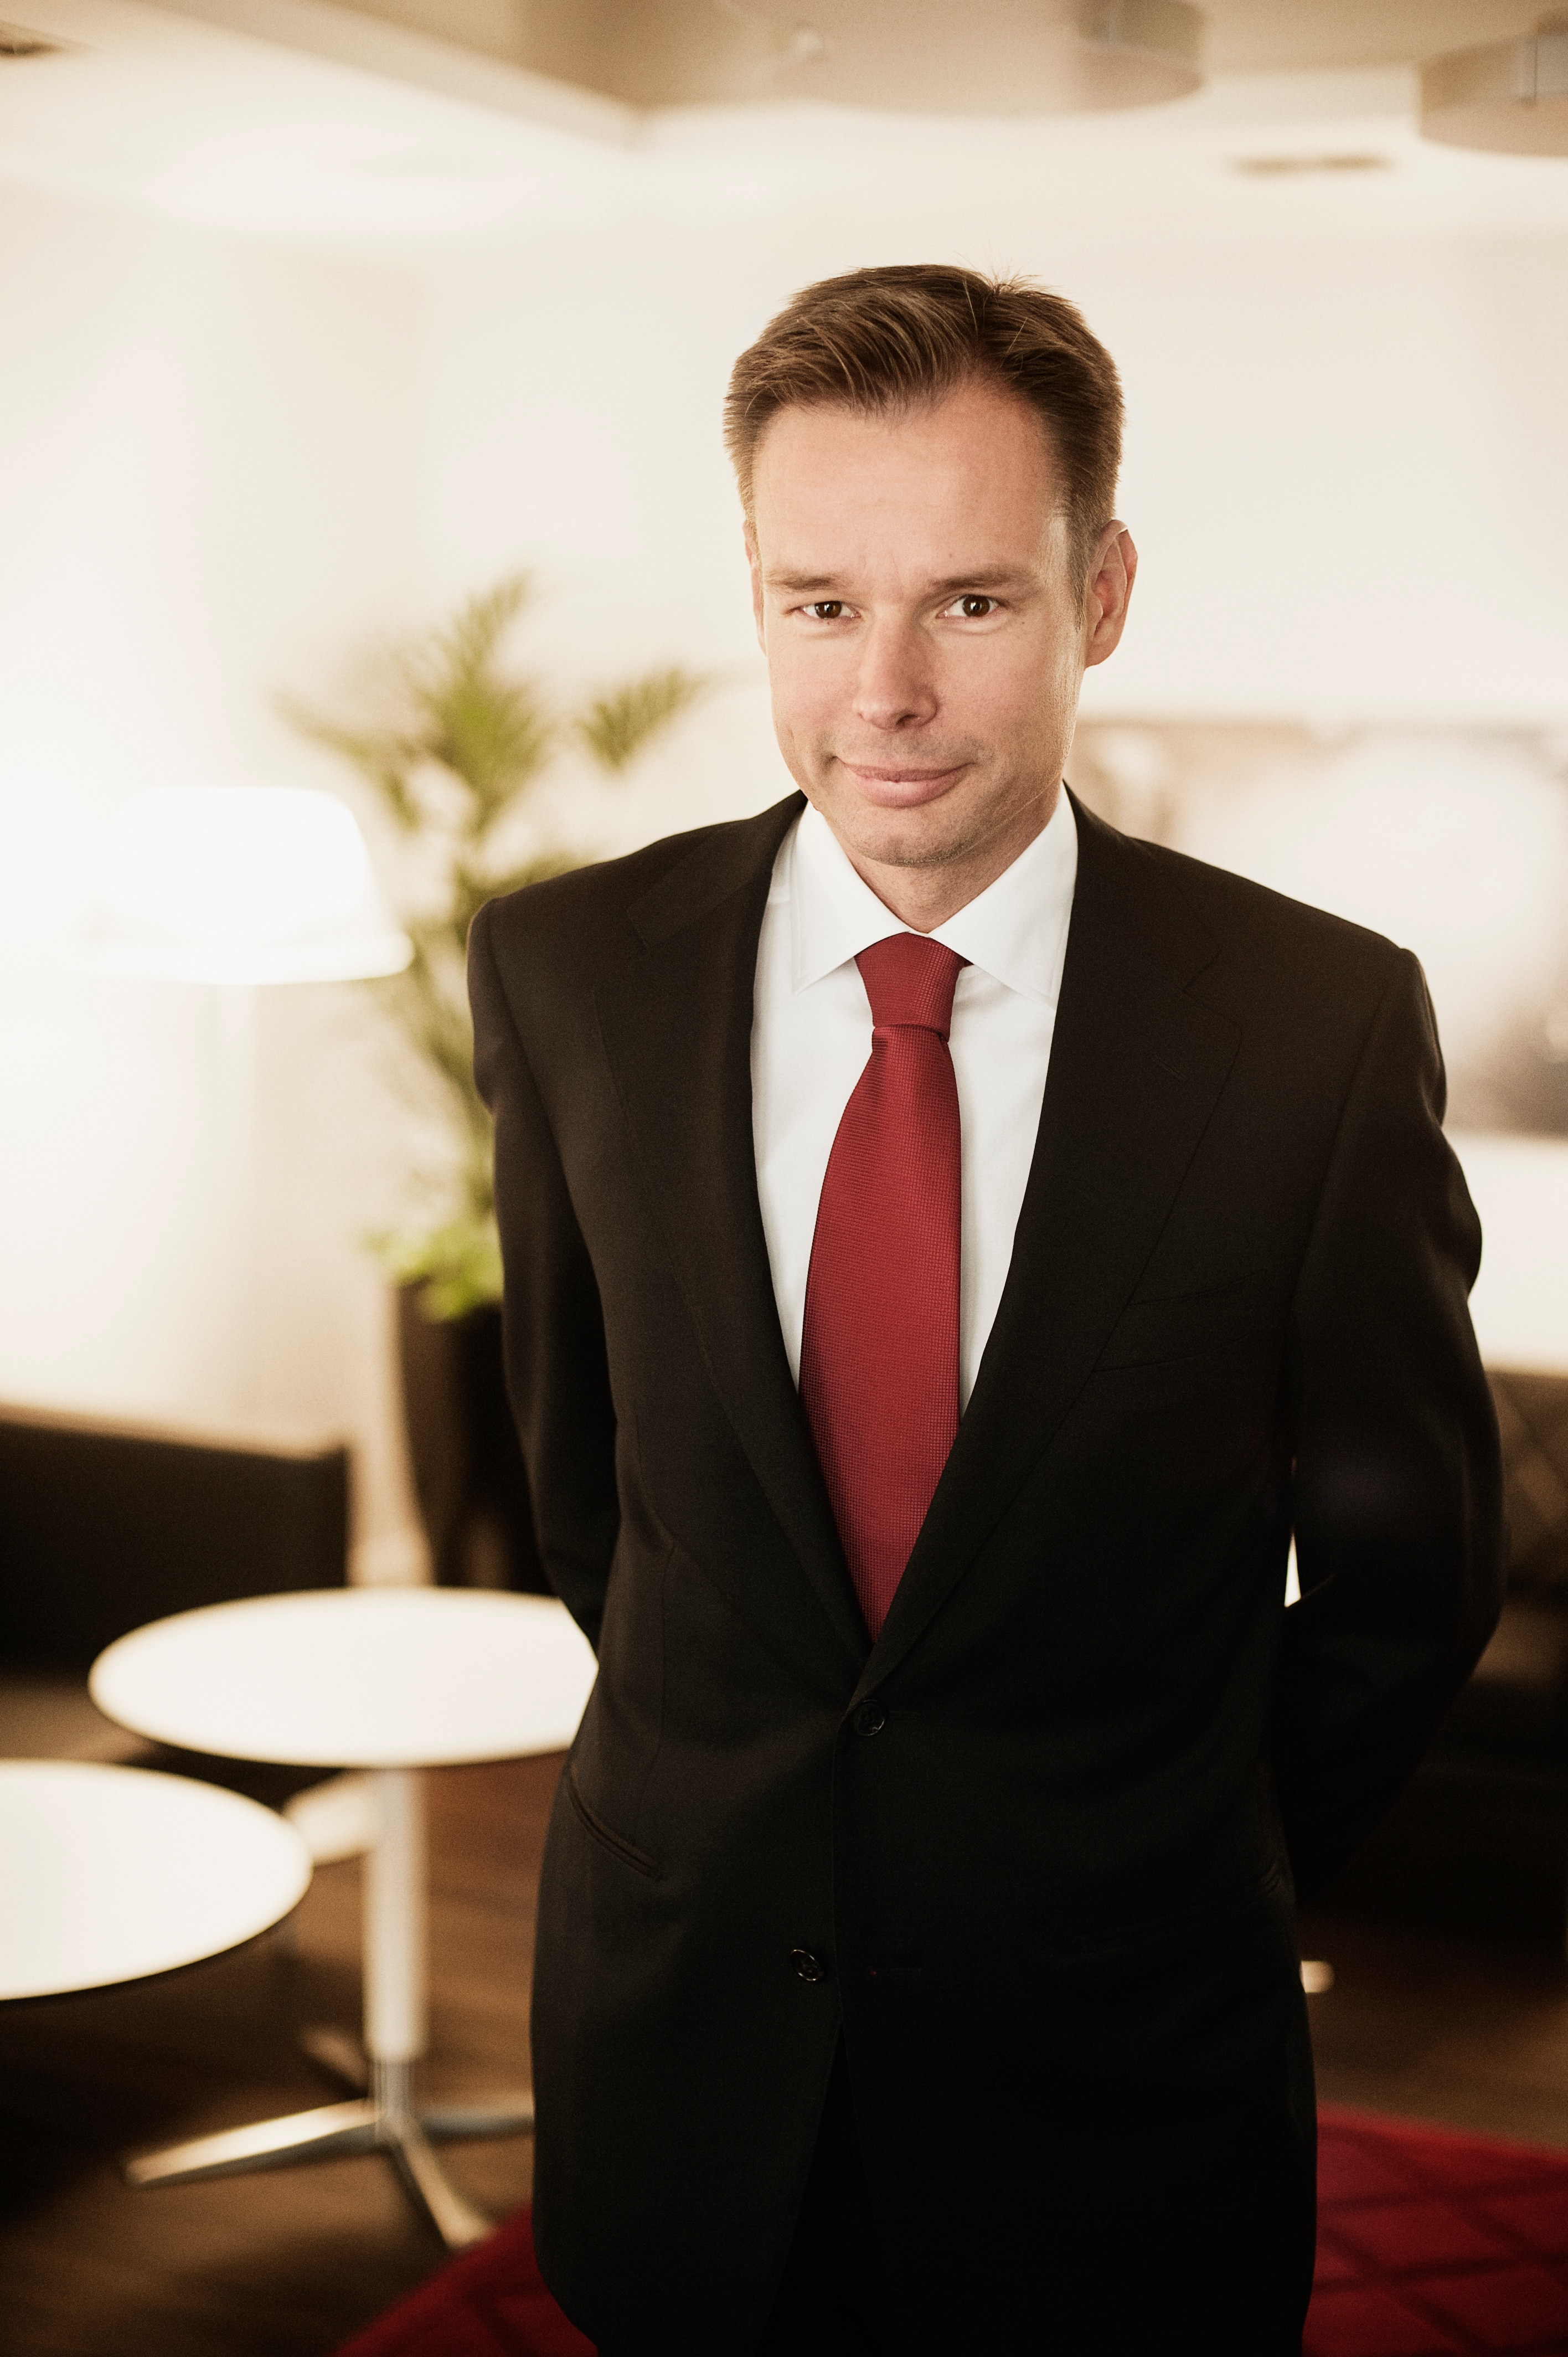 Fredrik Persson, VD och koncernchef för Axel Johnson AB